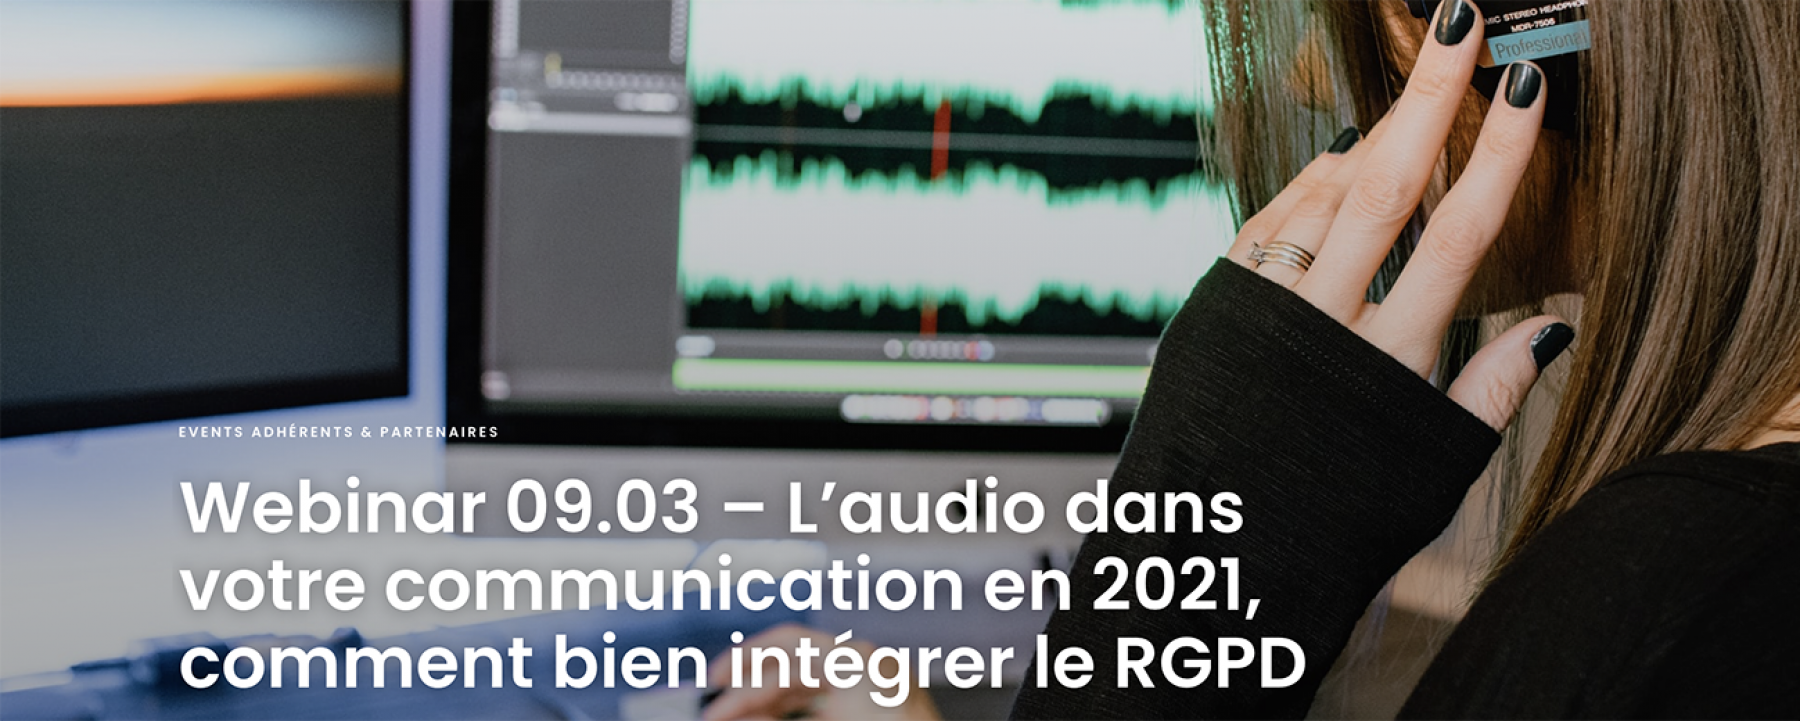 L'audio dans votre communication en 2021, comment bien intégrer le RGPD ? organisé par l'Observatoire COM MEDIA le 9 mars 2021